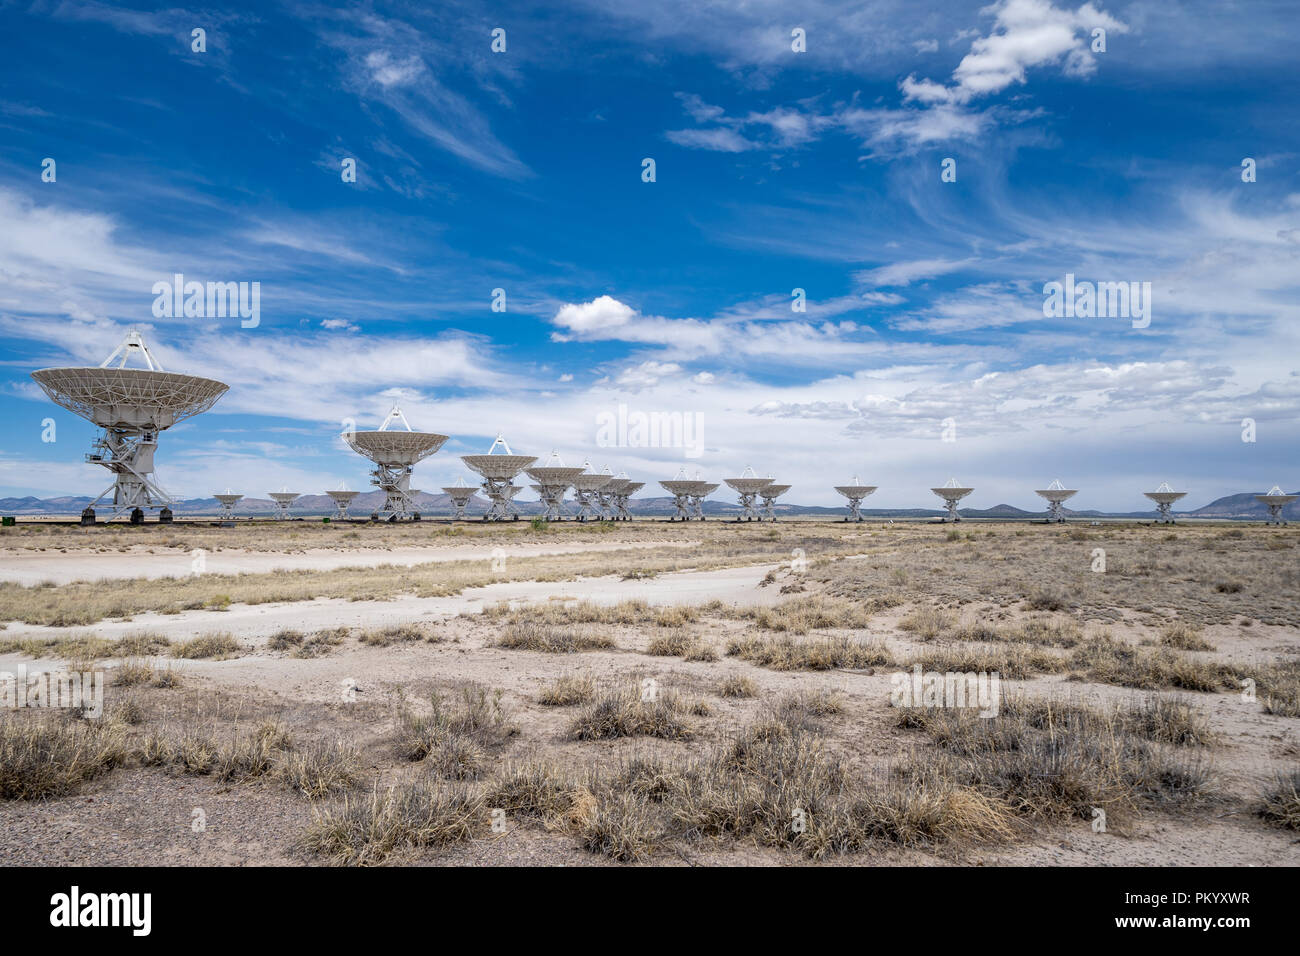 Situato in Socorro in New Mexico. Foto scattata su un soleggiato parzialmente nuvoloso giorno. Foto Stock